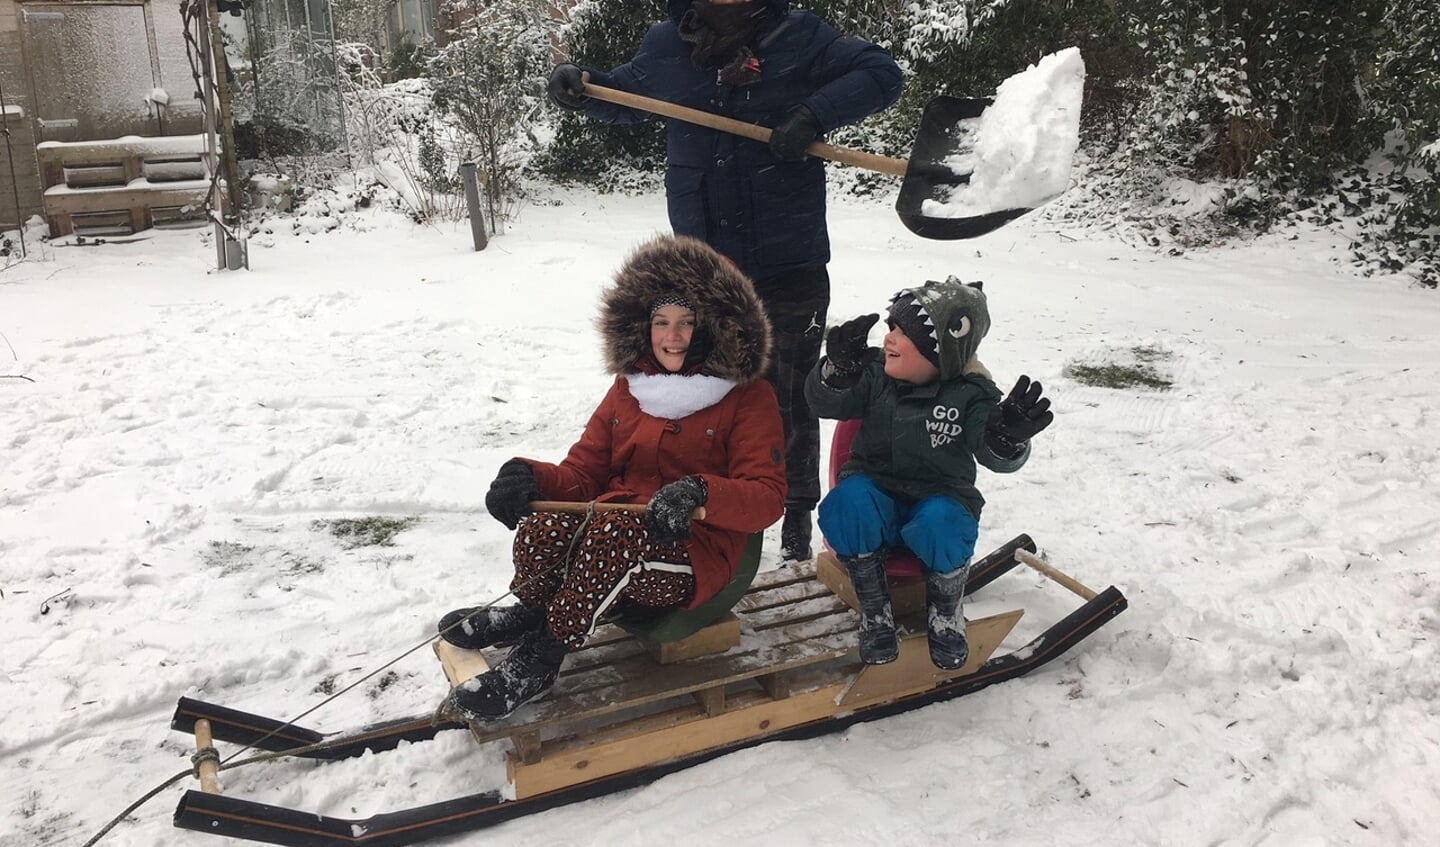 Opa John, woonachtig aan de Klomperweg in Lunteren. maakte zondag zelf in allerijl een sneeuw voor zijn kleinkinderen. Op de foto staan de kleinkinderen Liv en Milo met hun vader Koen.